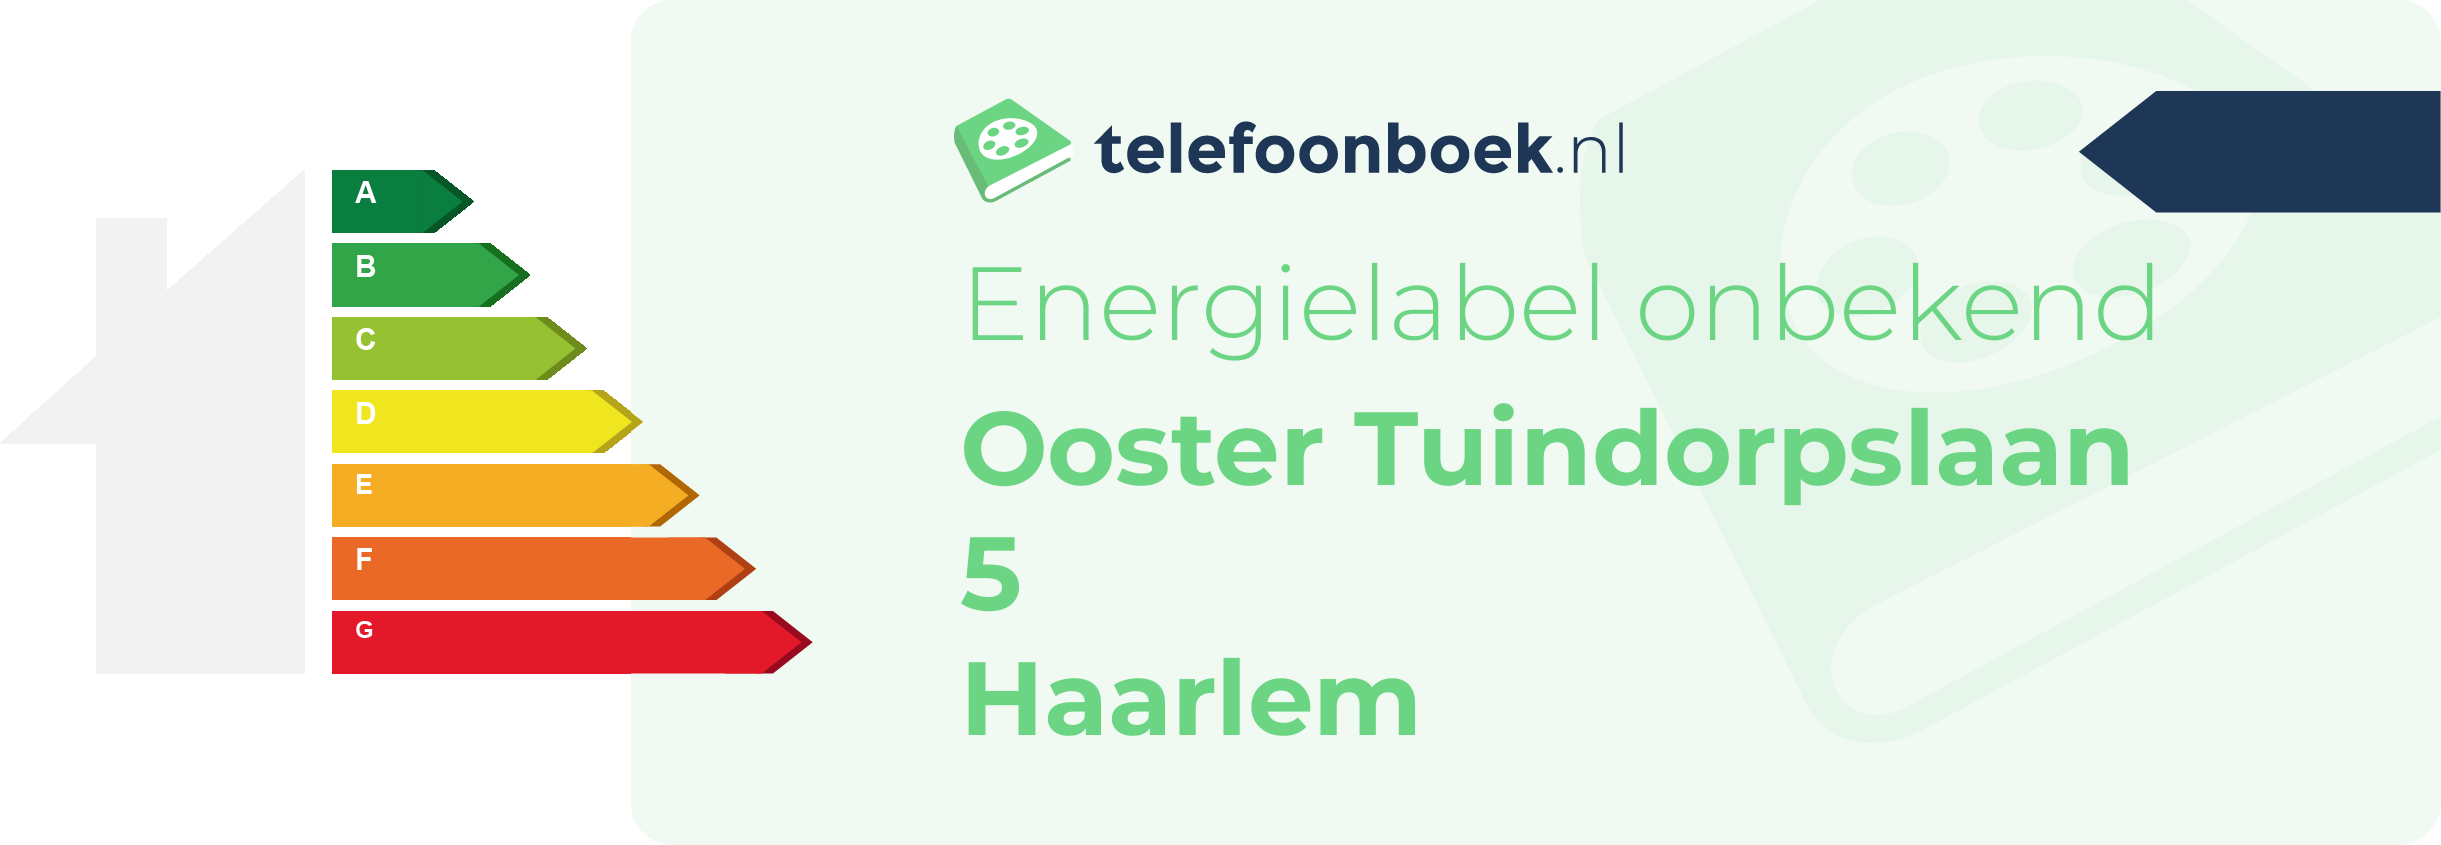 Energielabel Ooster Tuindorpslaan 5 Haarlem